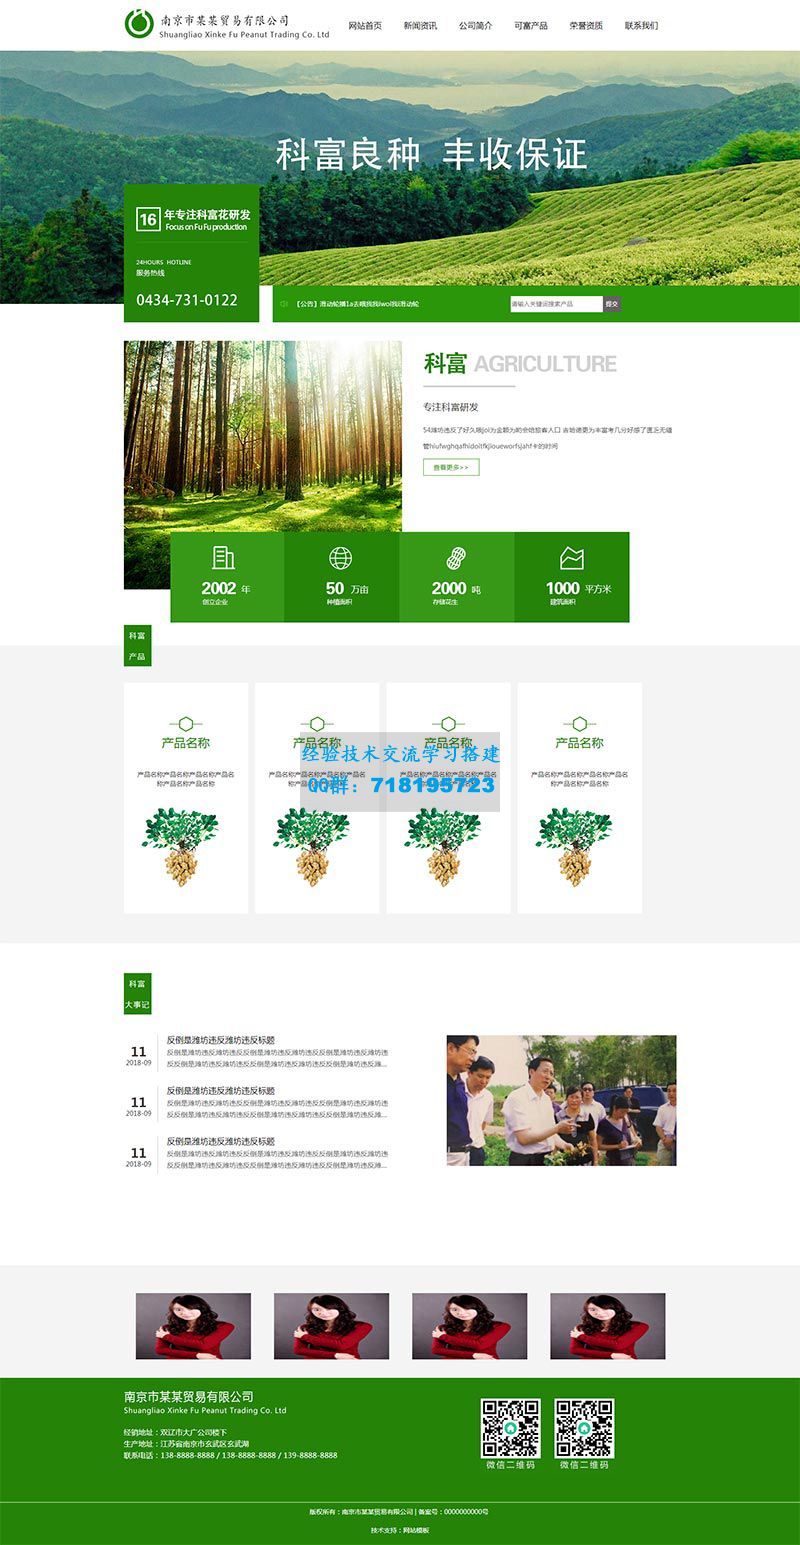     绿色的农产品贸易公司官网静态html模板
